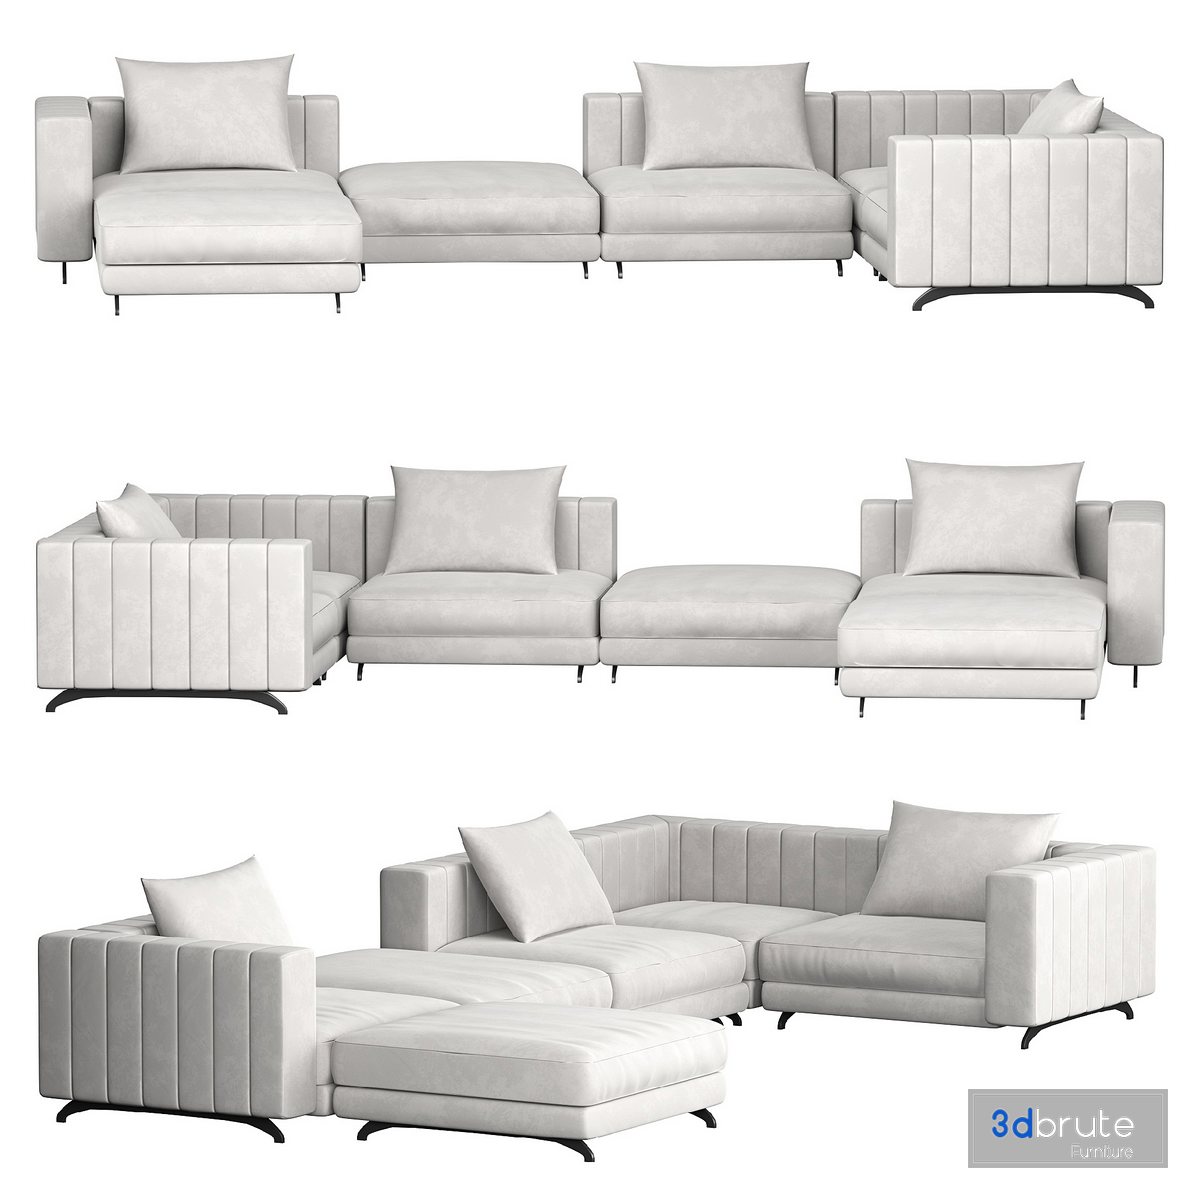 Berlin Modular Sectional sofa 3d model Buy Download 3dbrute